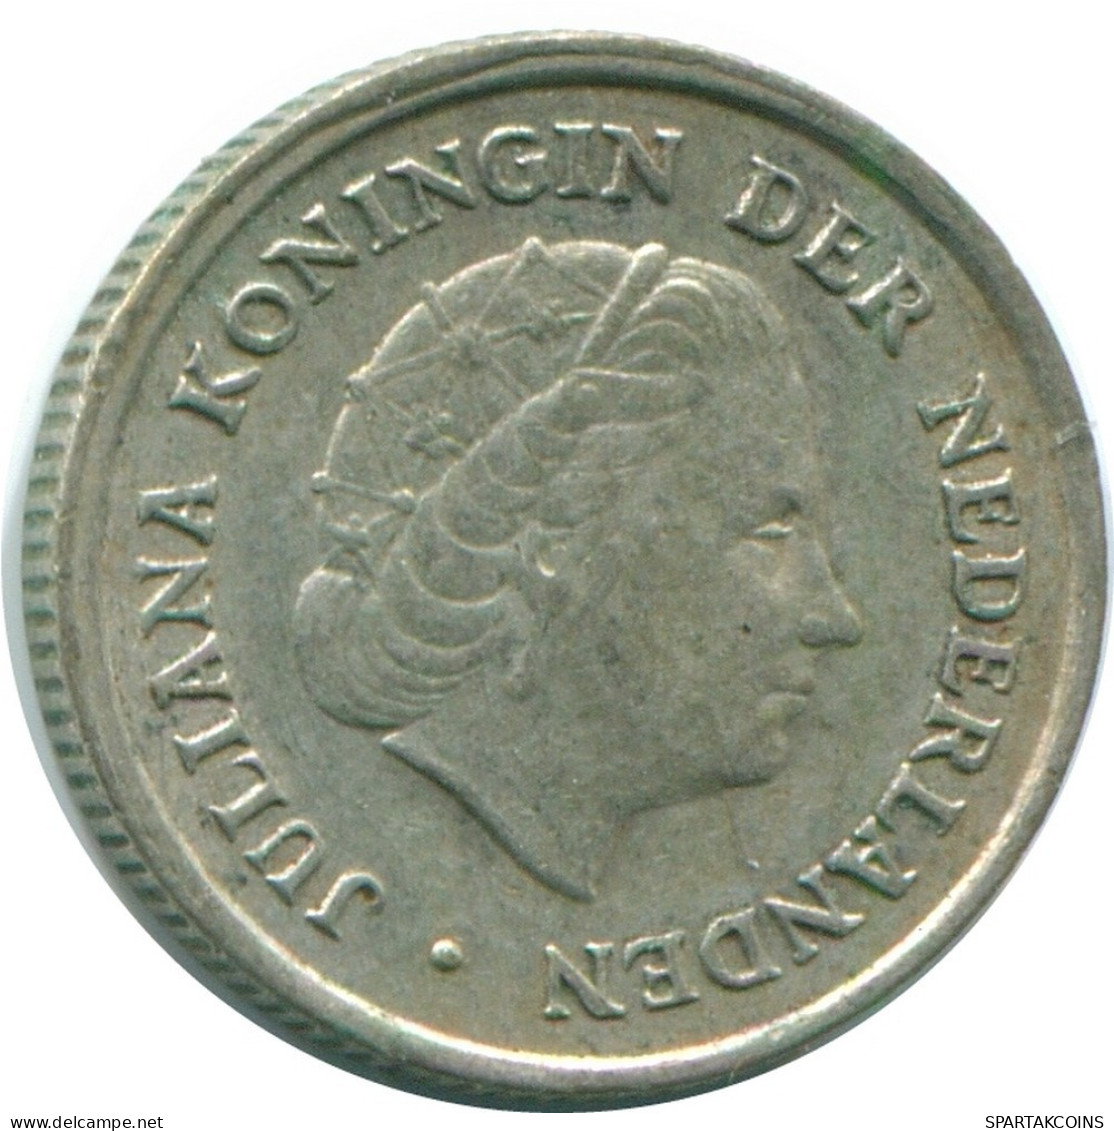 1/10 GULDEN 1970 NIEDERLÄNDISCHE ANTILLEN SILBER Koloniale Münze #NL13113.3.D.A - Antille Olandesi